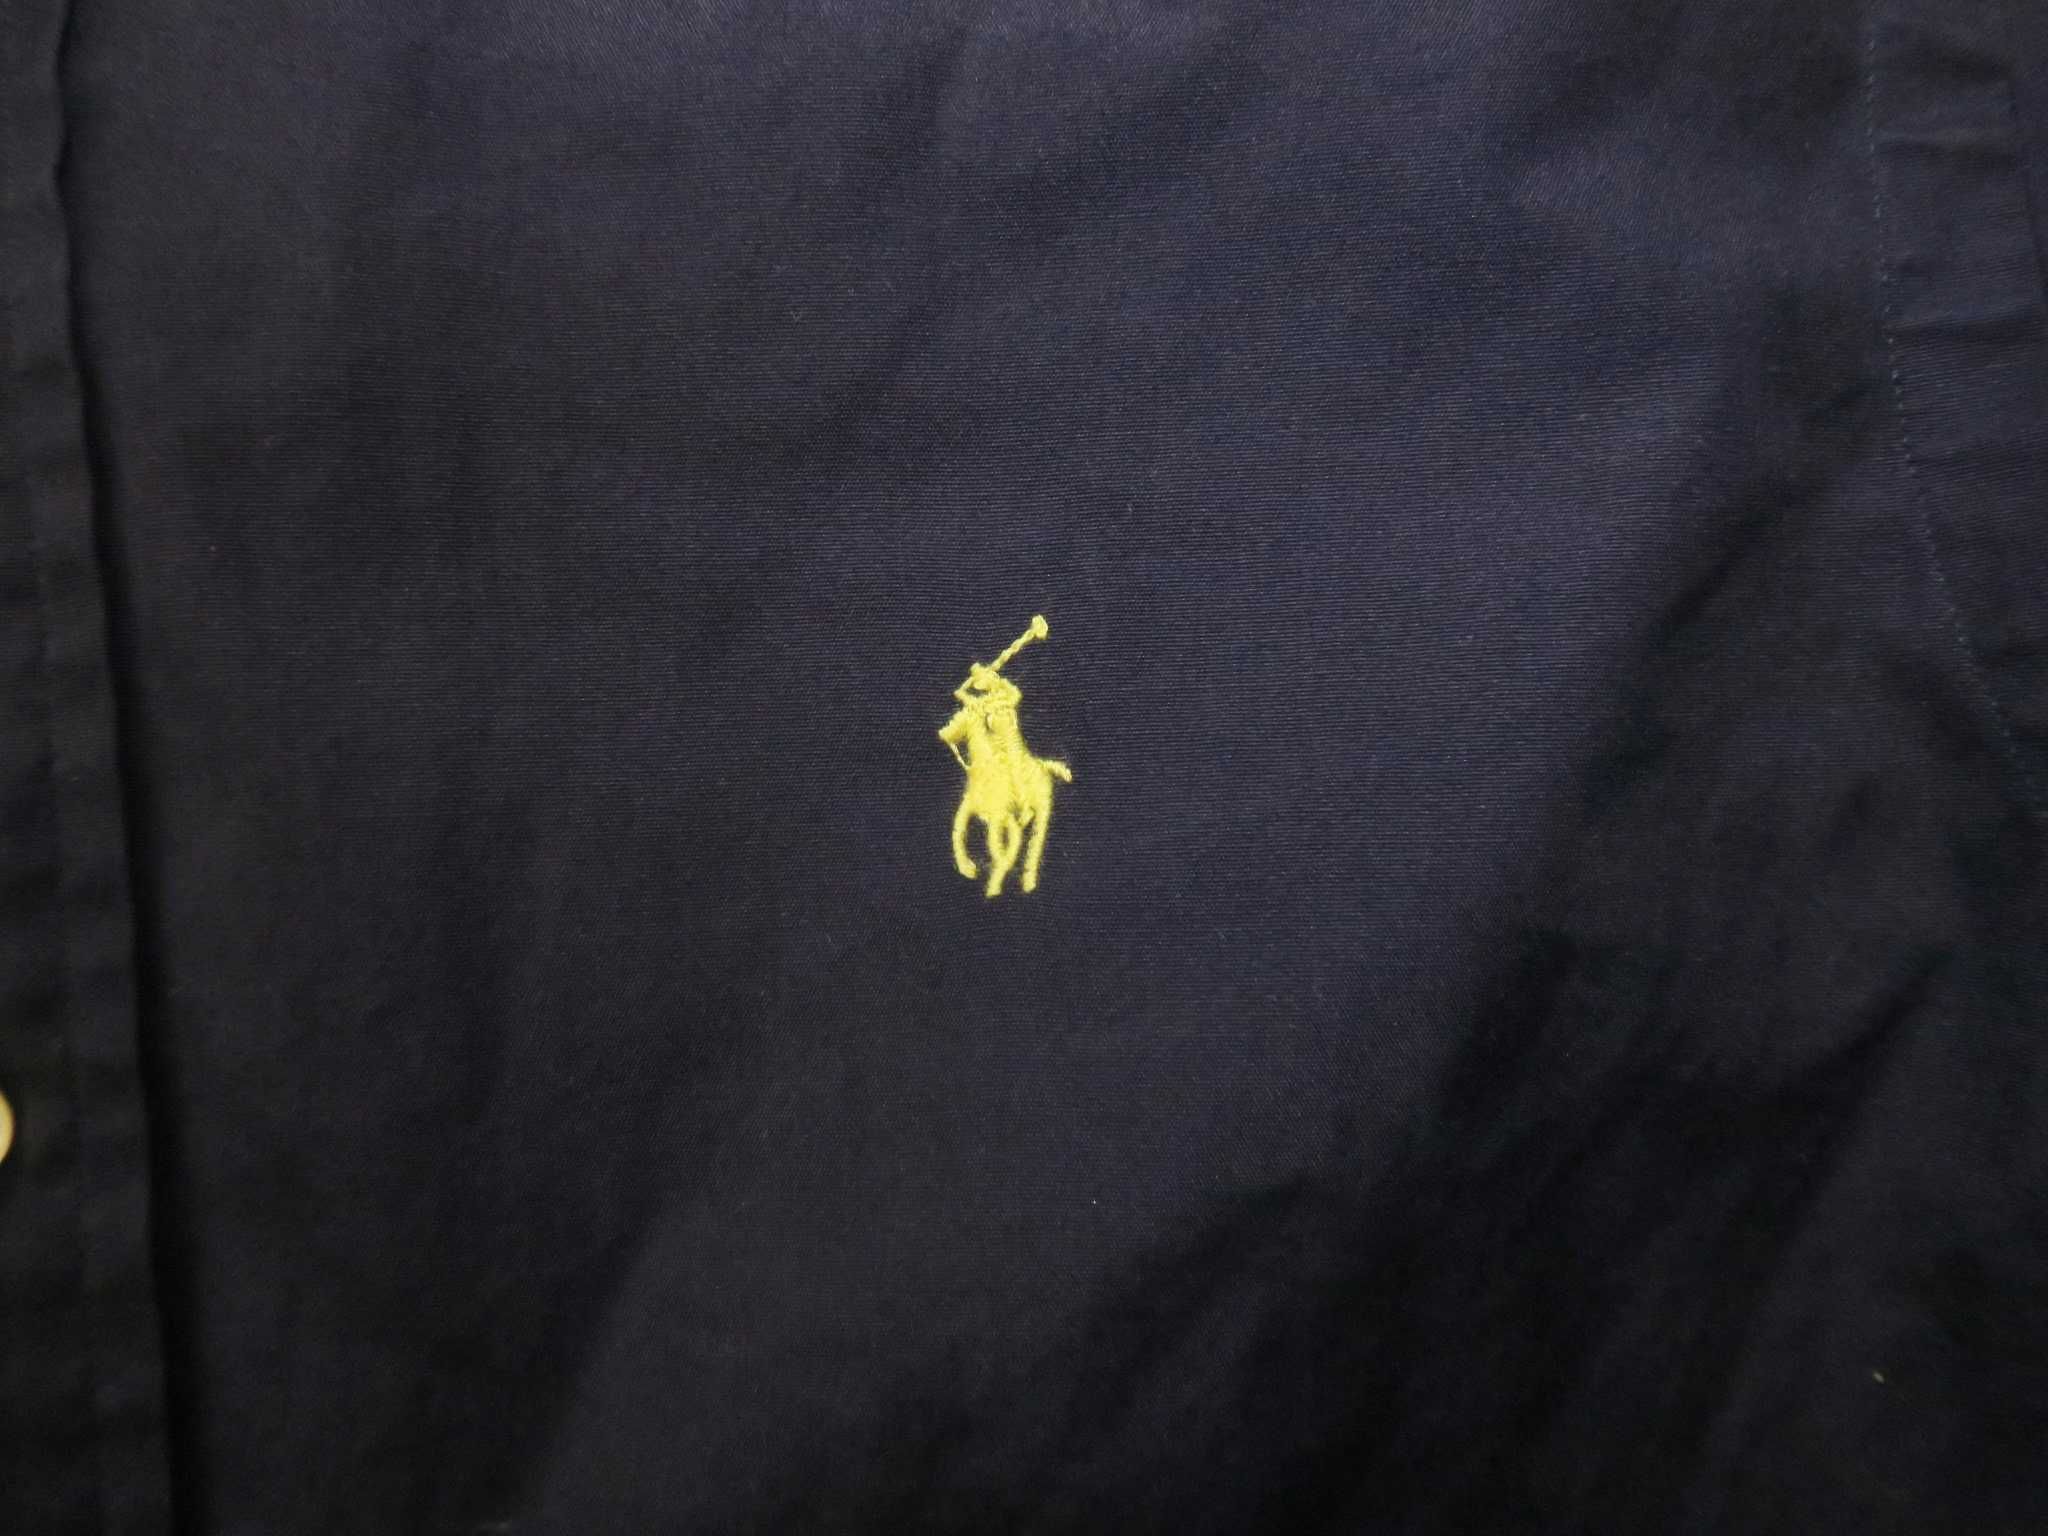 Ralph Lauren koszula slim fit nowe kolekcje S